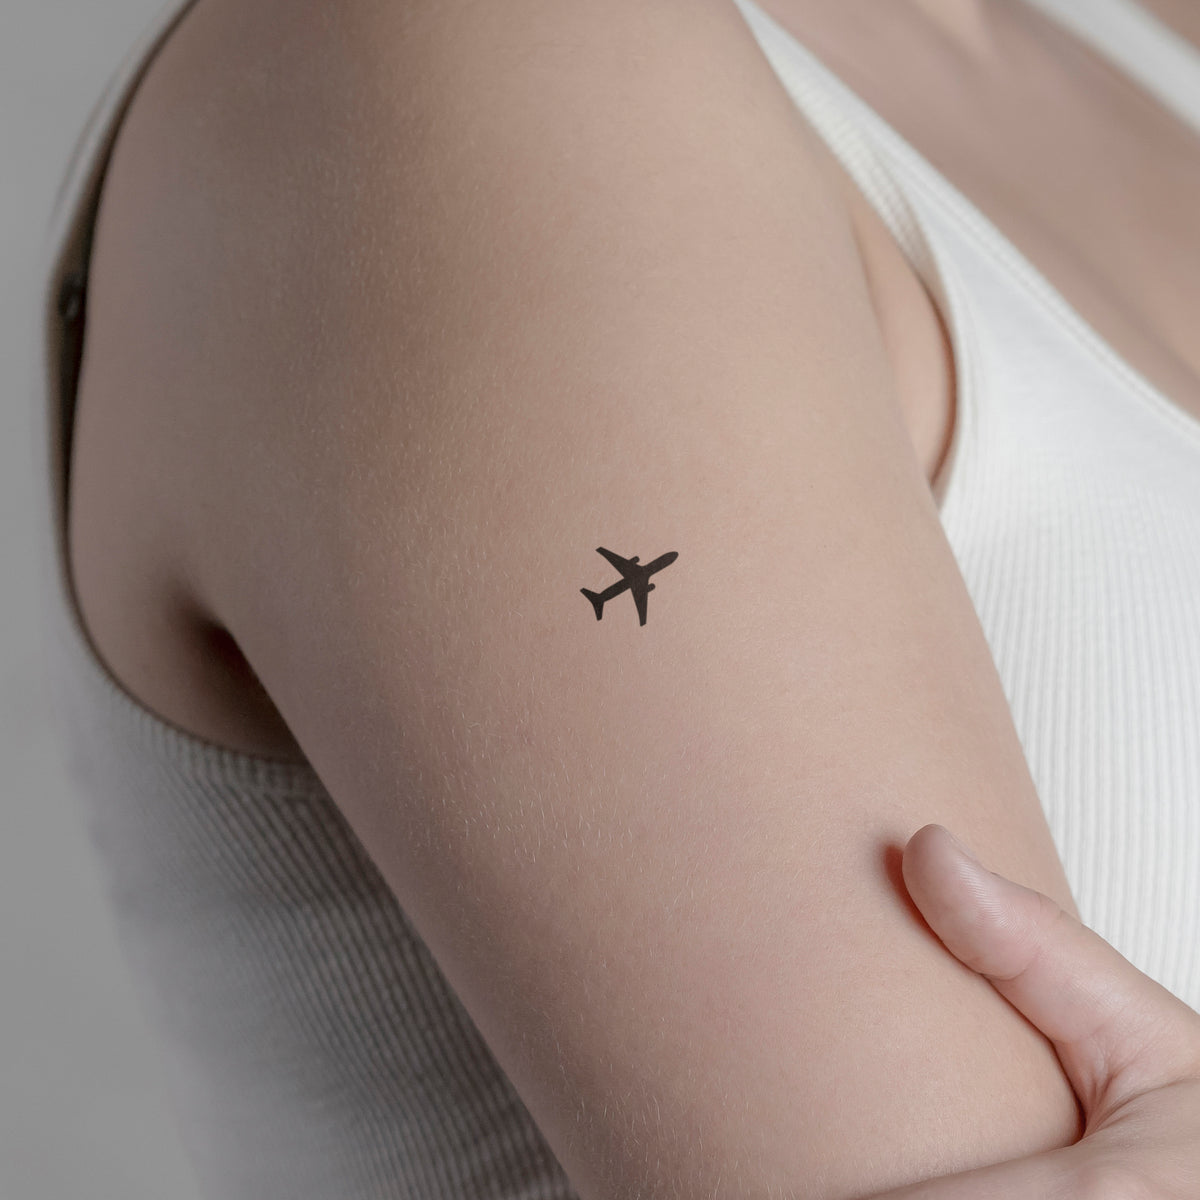 Flugzeug Tattoo von minink, der Marke für temporäre Tattoos.